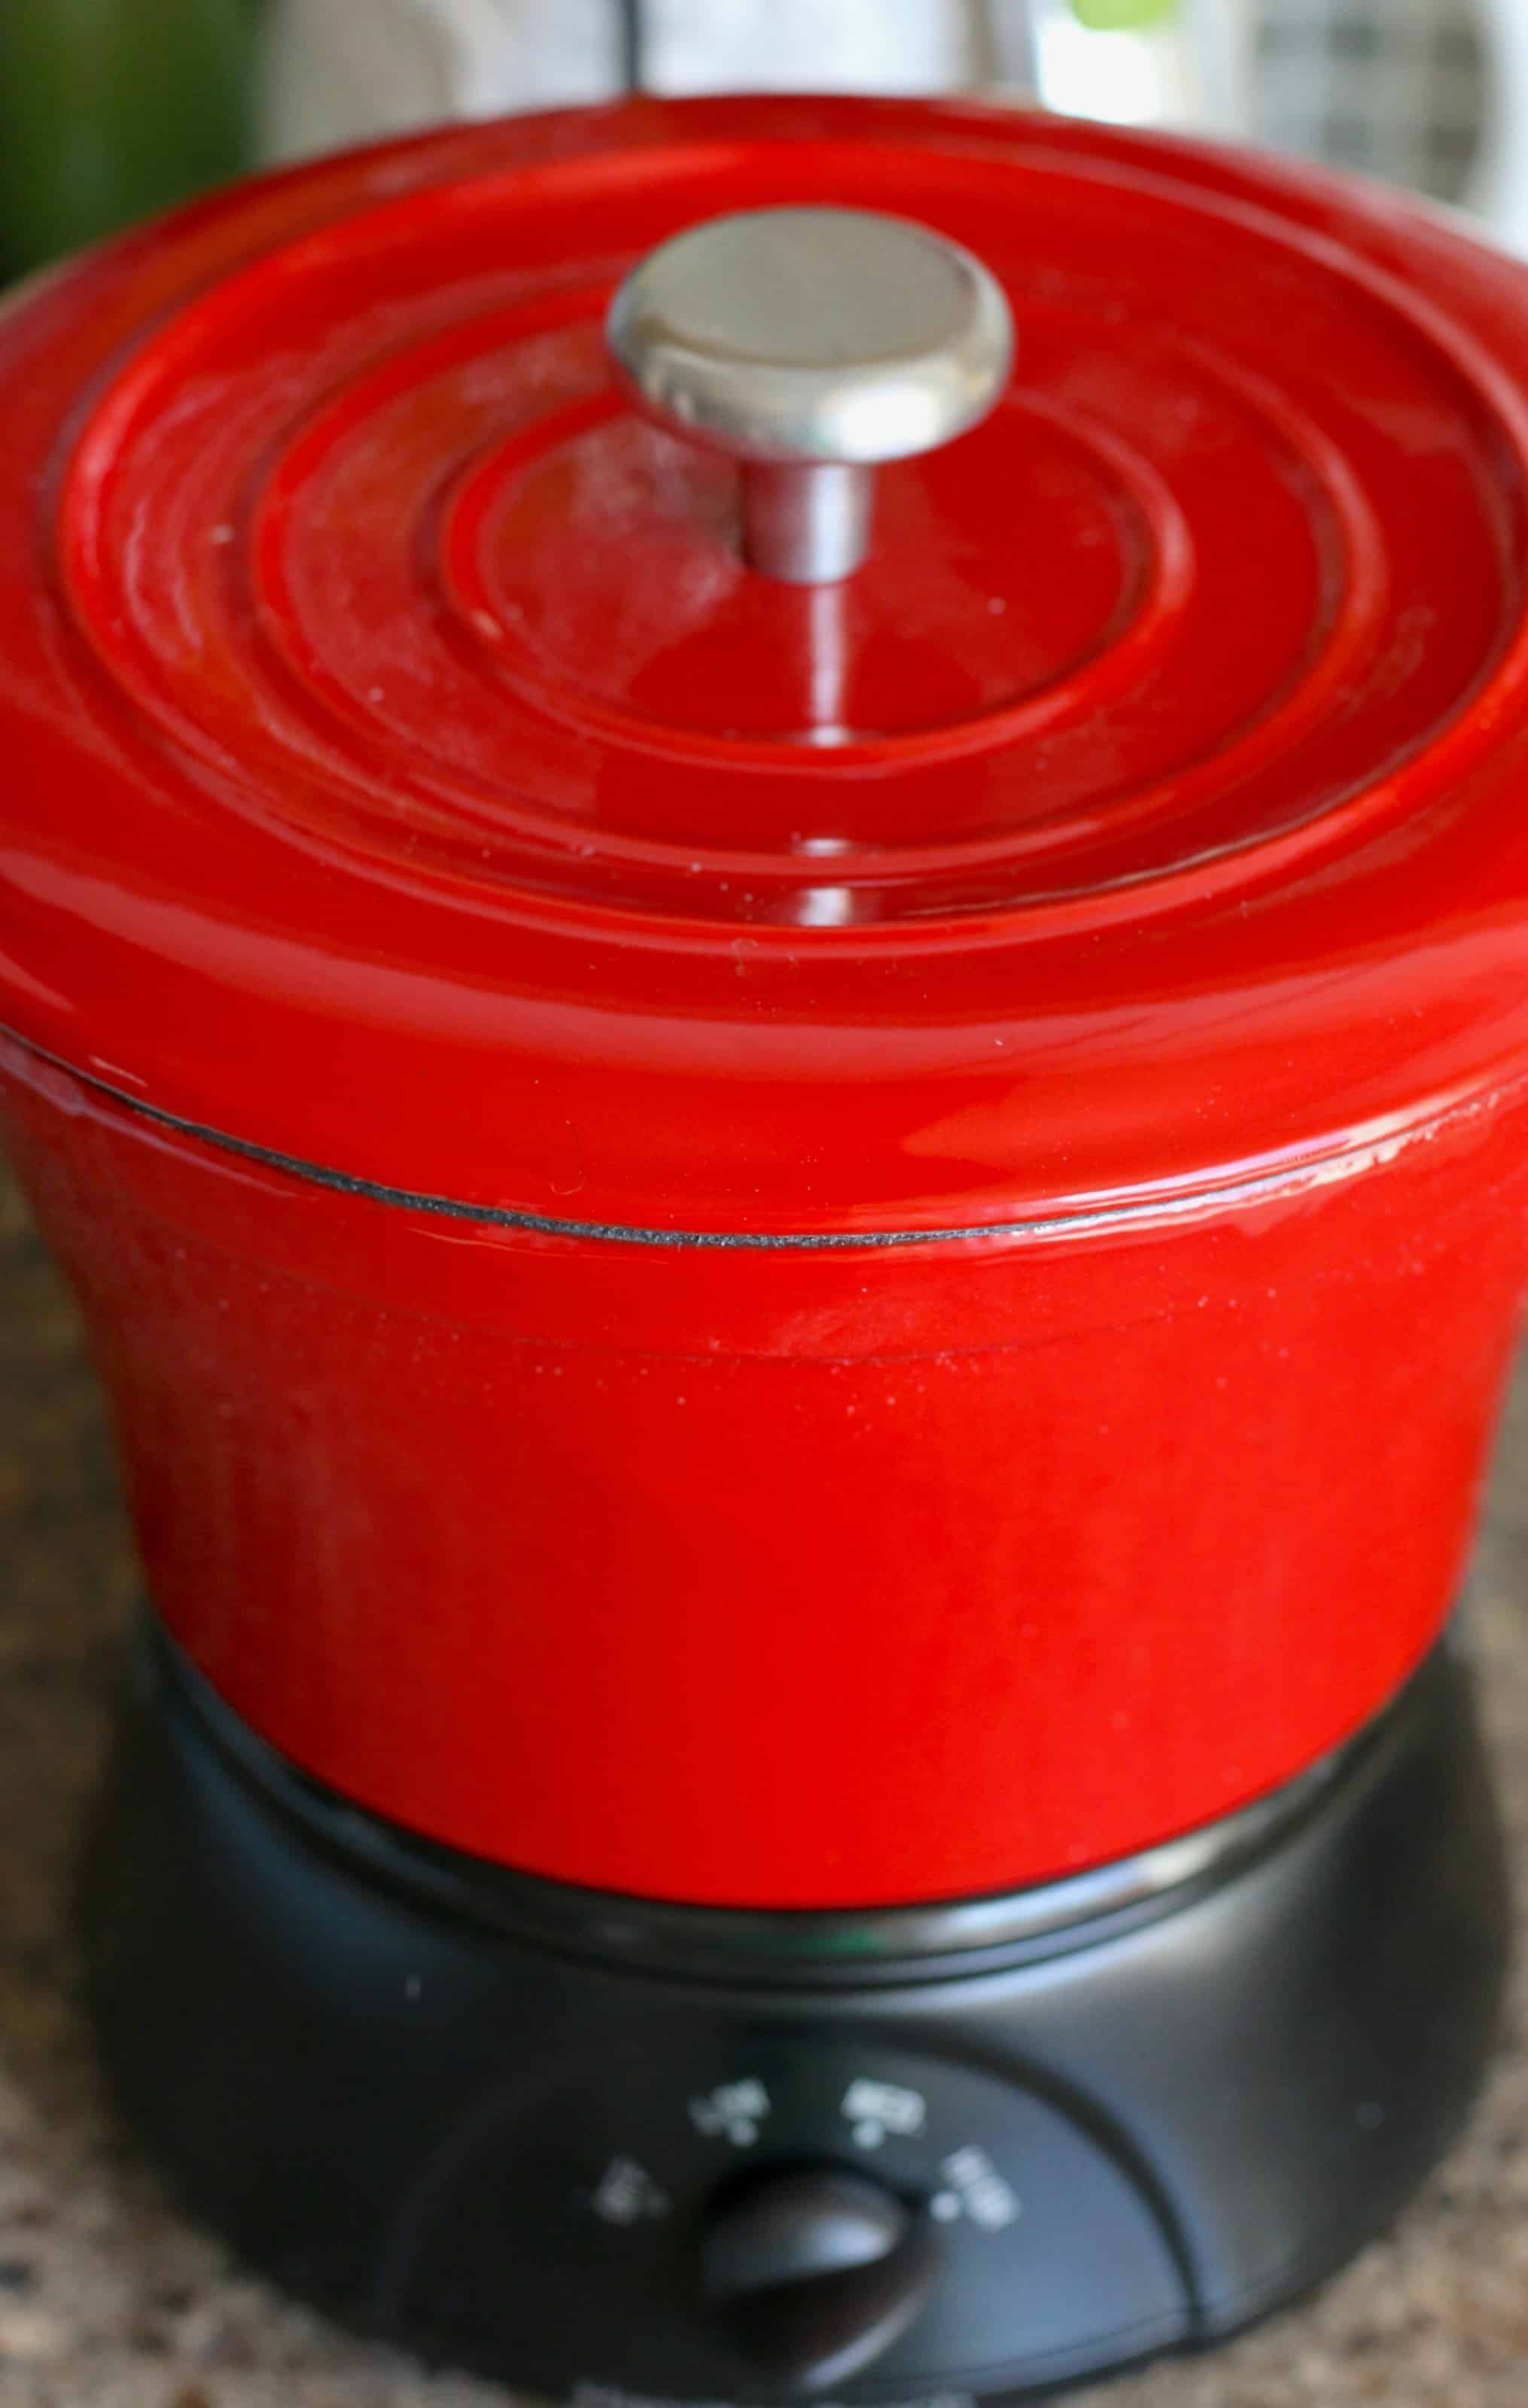 lid shown on red mini cast iron crock pot.